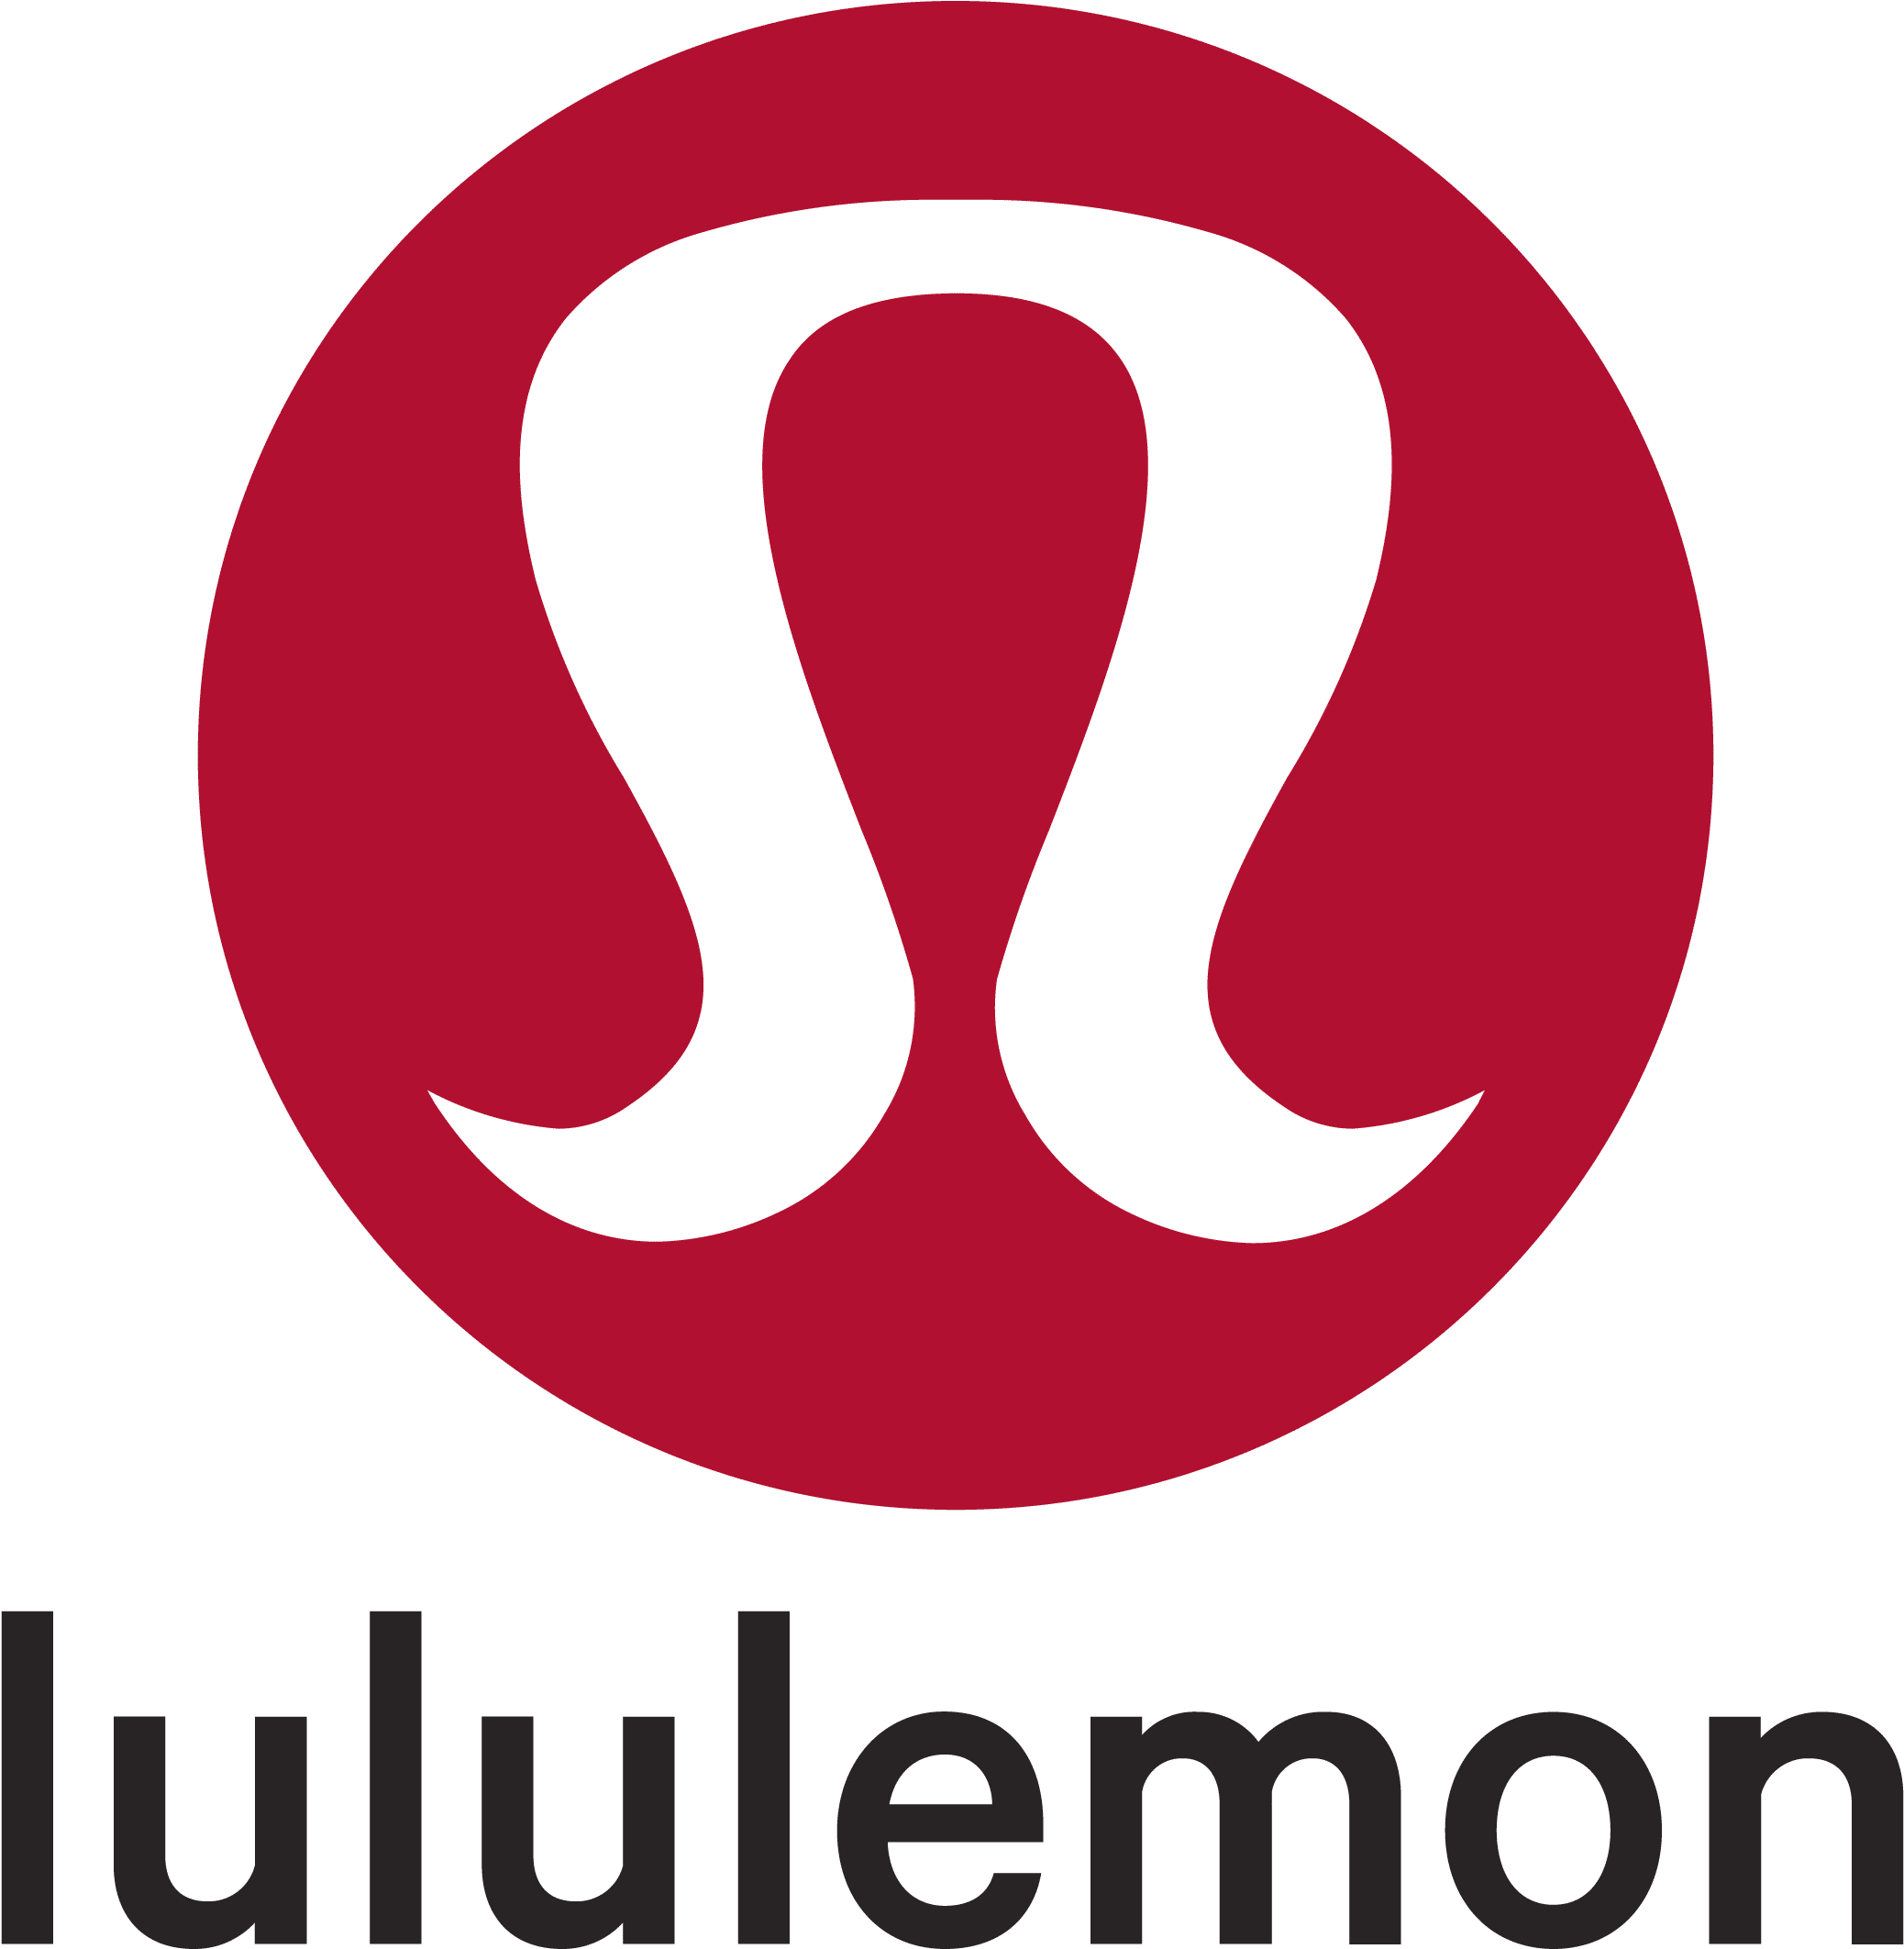 Lululemon Logo Y Símbolo, Significado, Historia, PNG, Marca ...